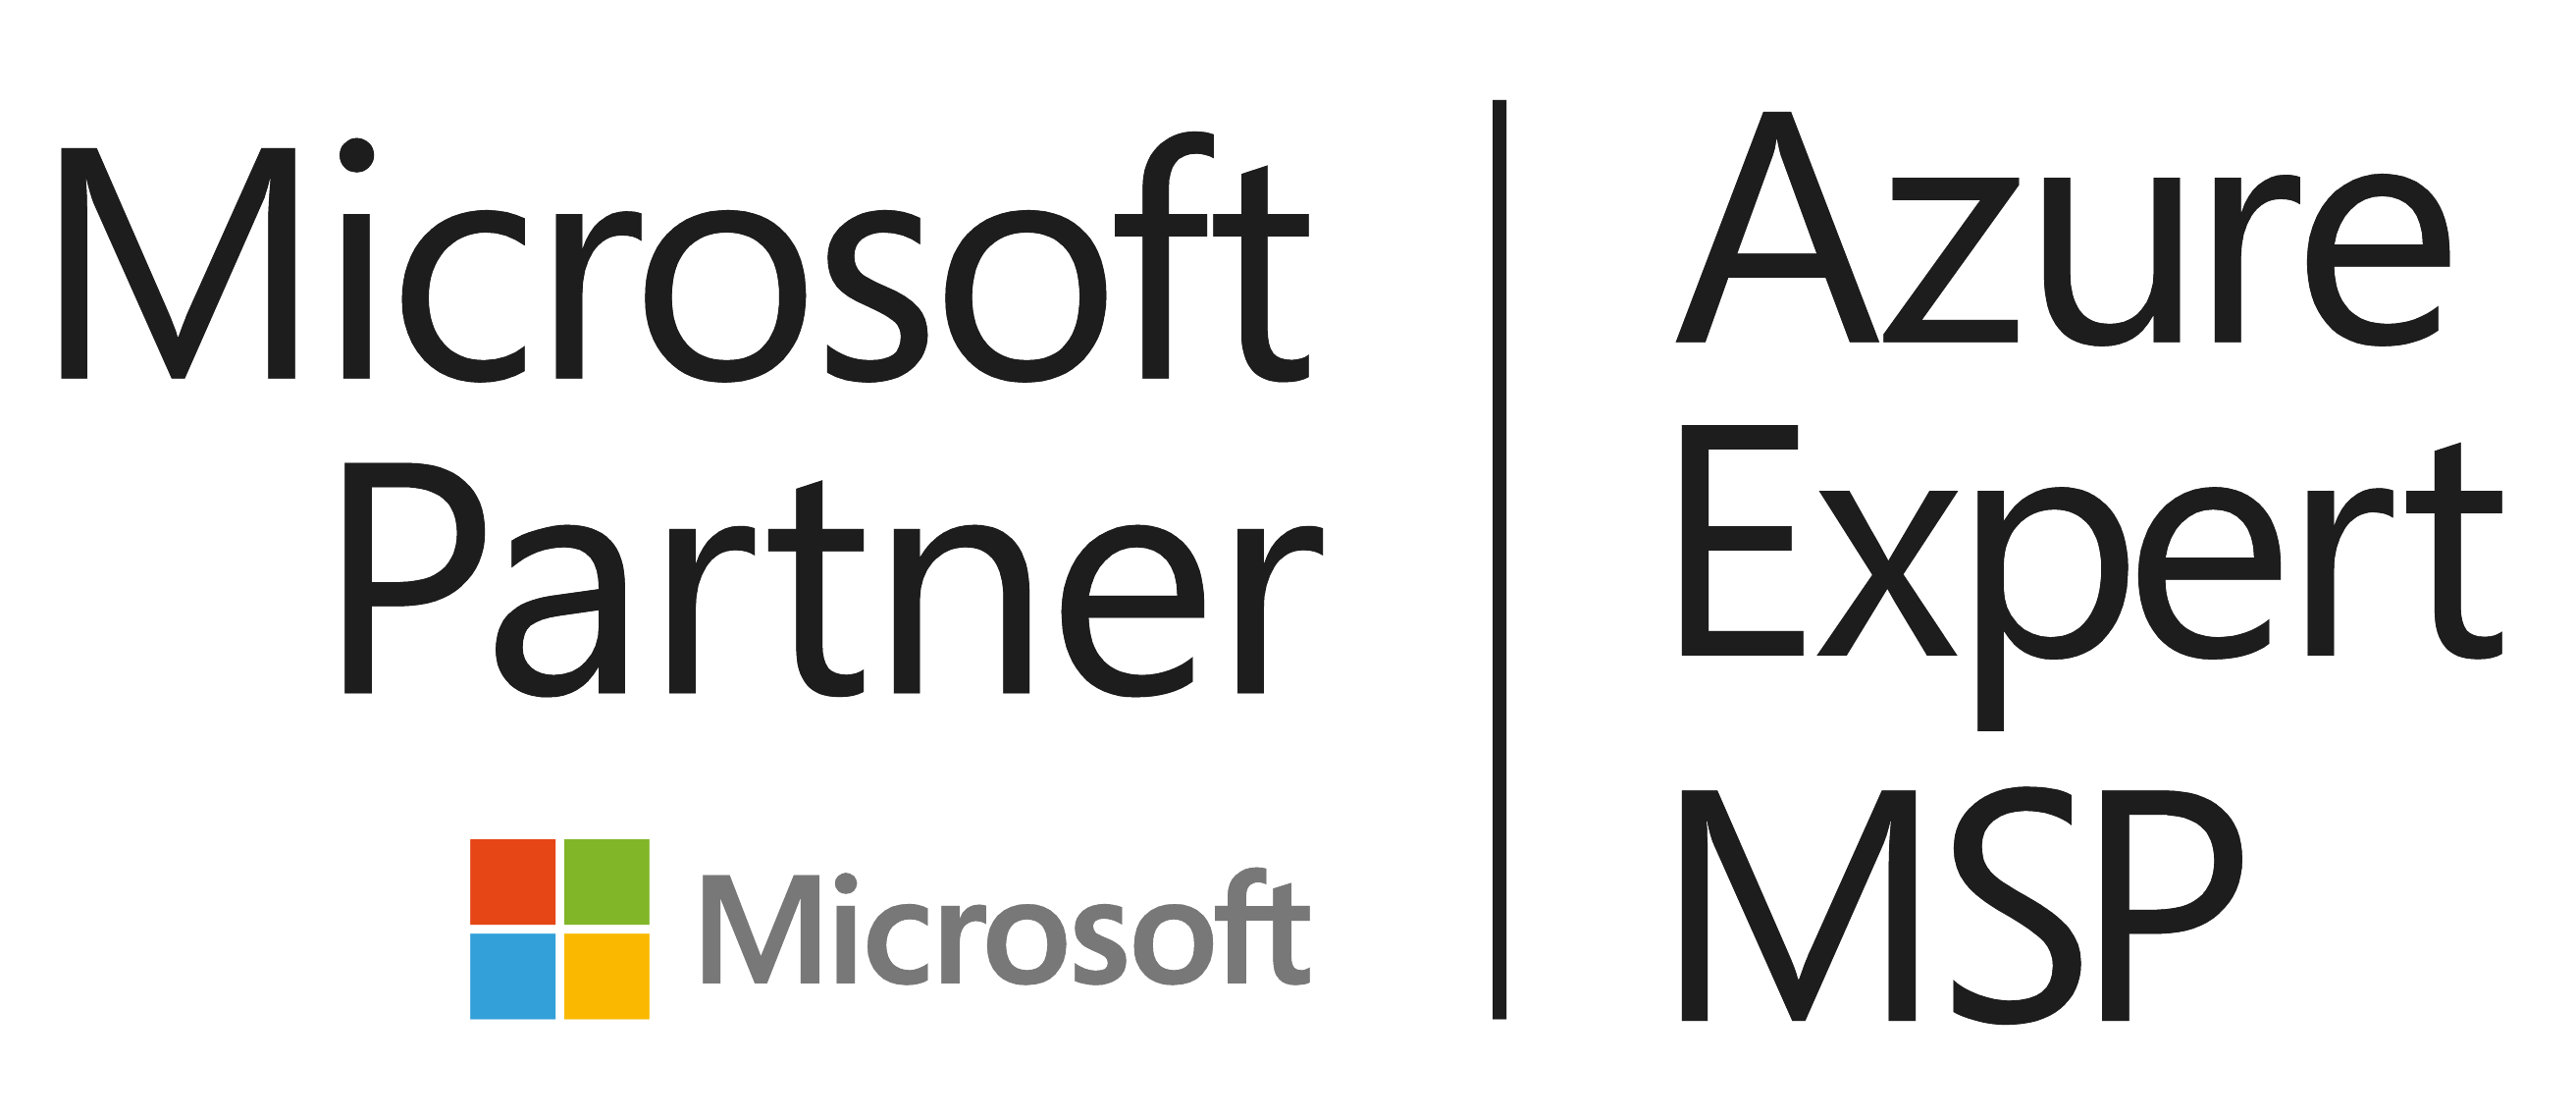 Azure Expert MSP Logo Image